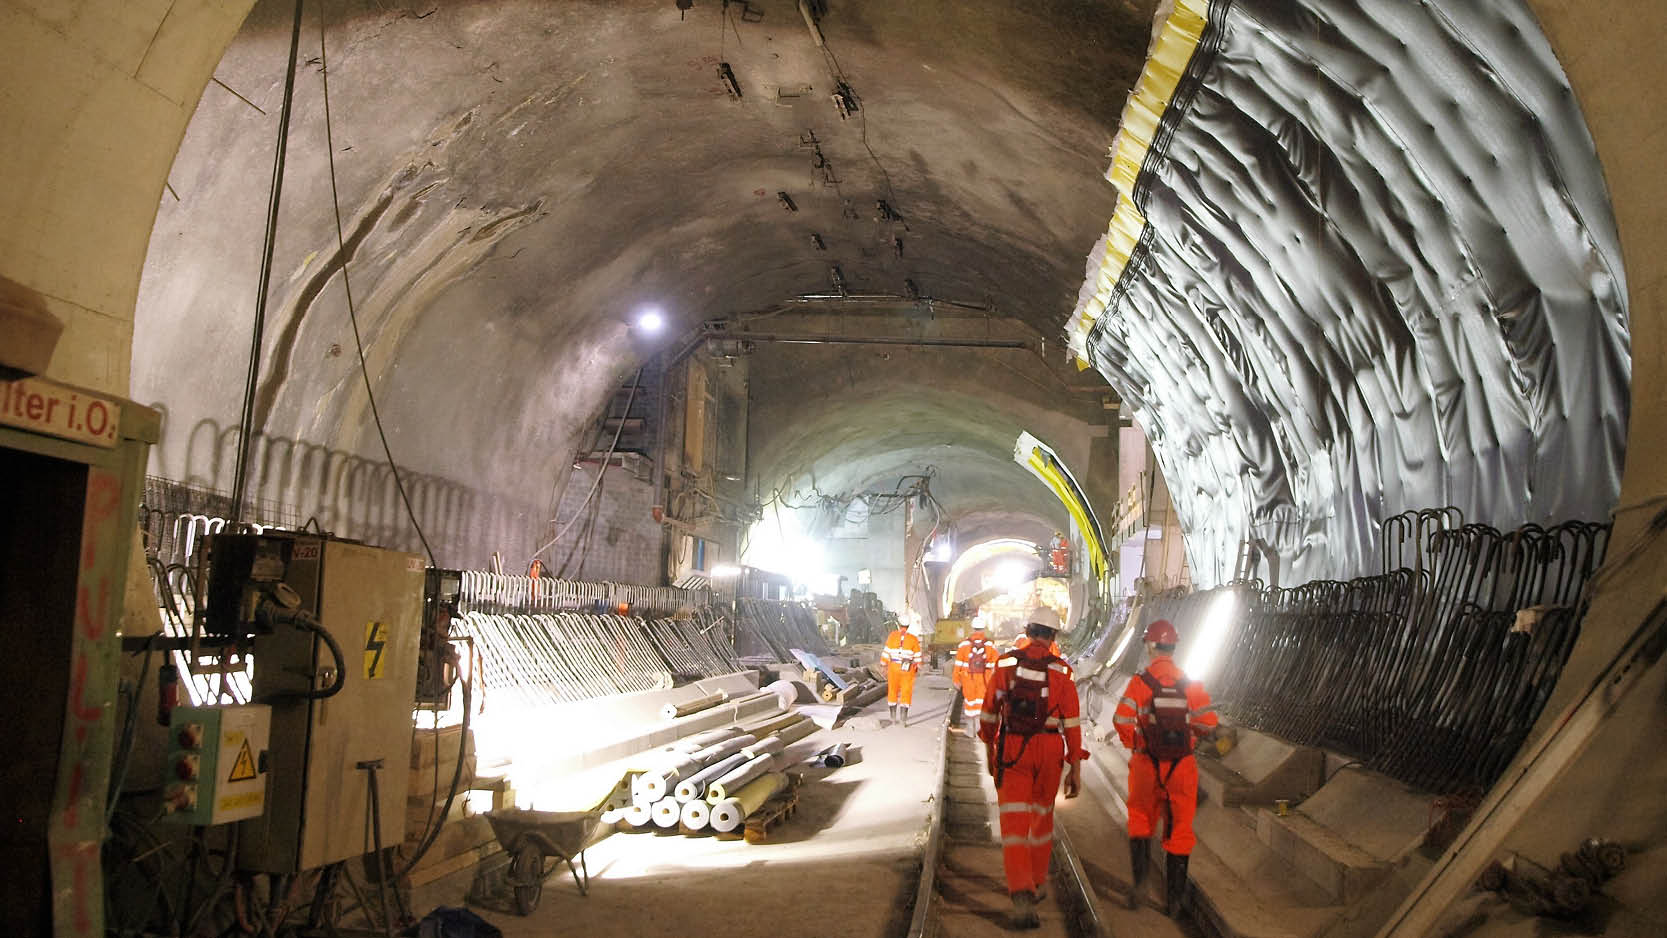 Mehrere Arbeiten in oranger Kleidung arbeiten im Tiefbau (Tunnel)